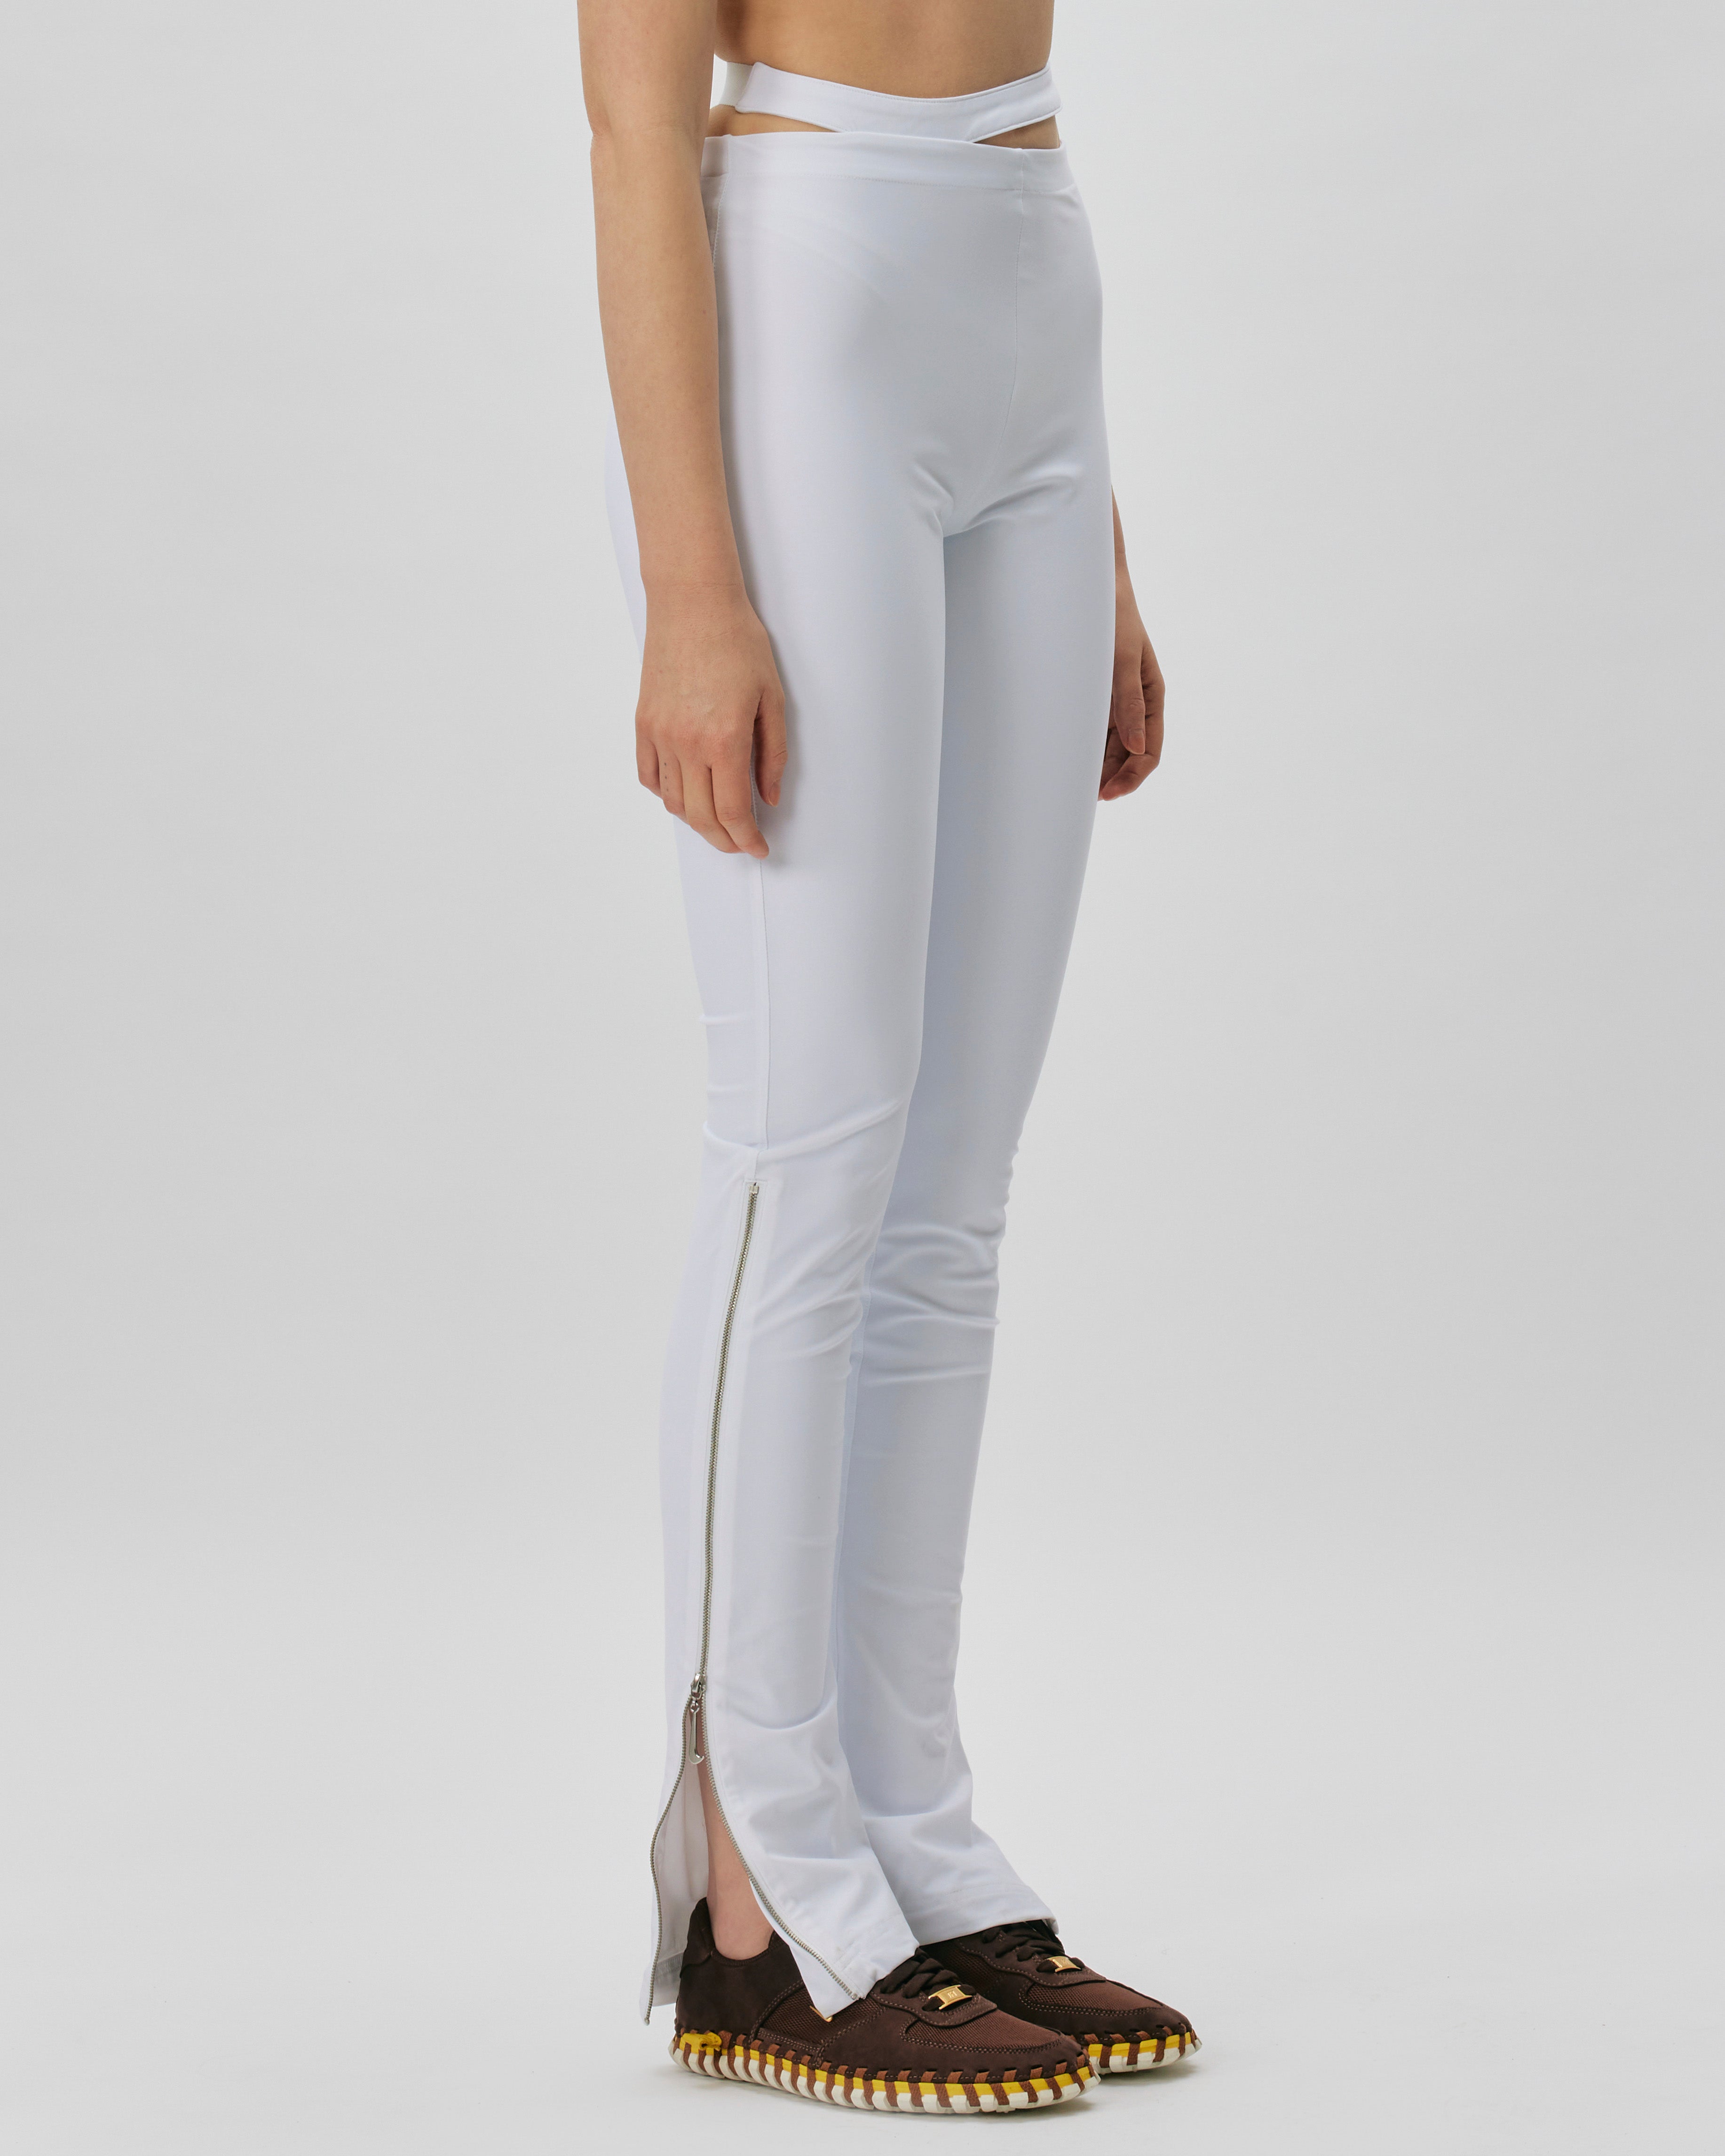 NIKE QS/TZ Nike x JACQUEMUS Pants WHITE DR5269-100